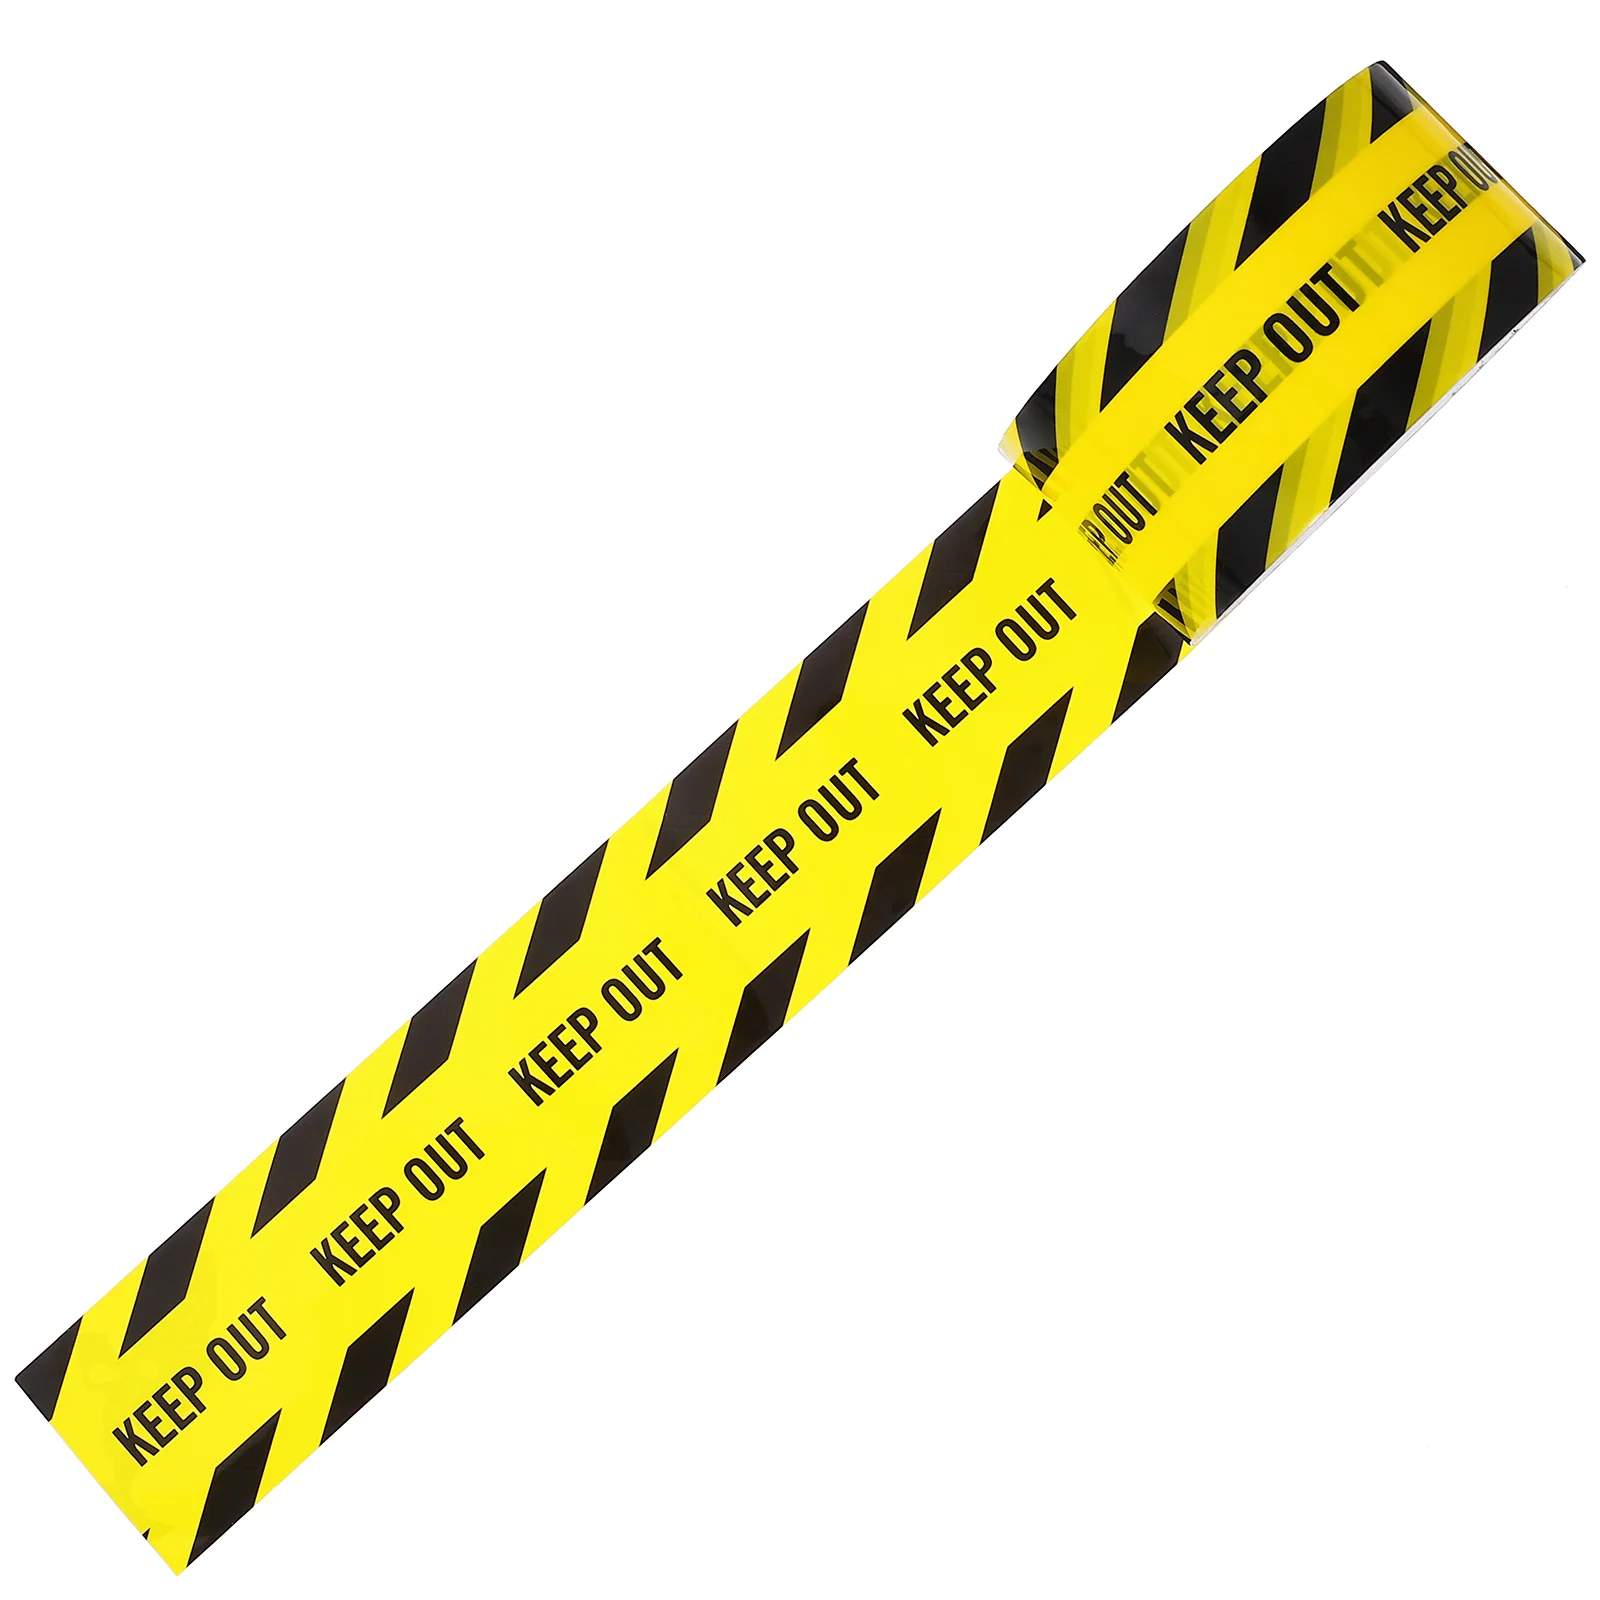 

Защитная лента, 82 фута, ярко-желтый с черным для лучшей читаемости, максимальная видимость, предназначена для опасных зон